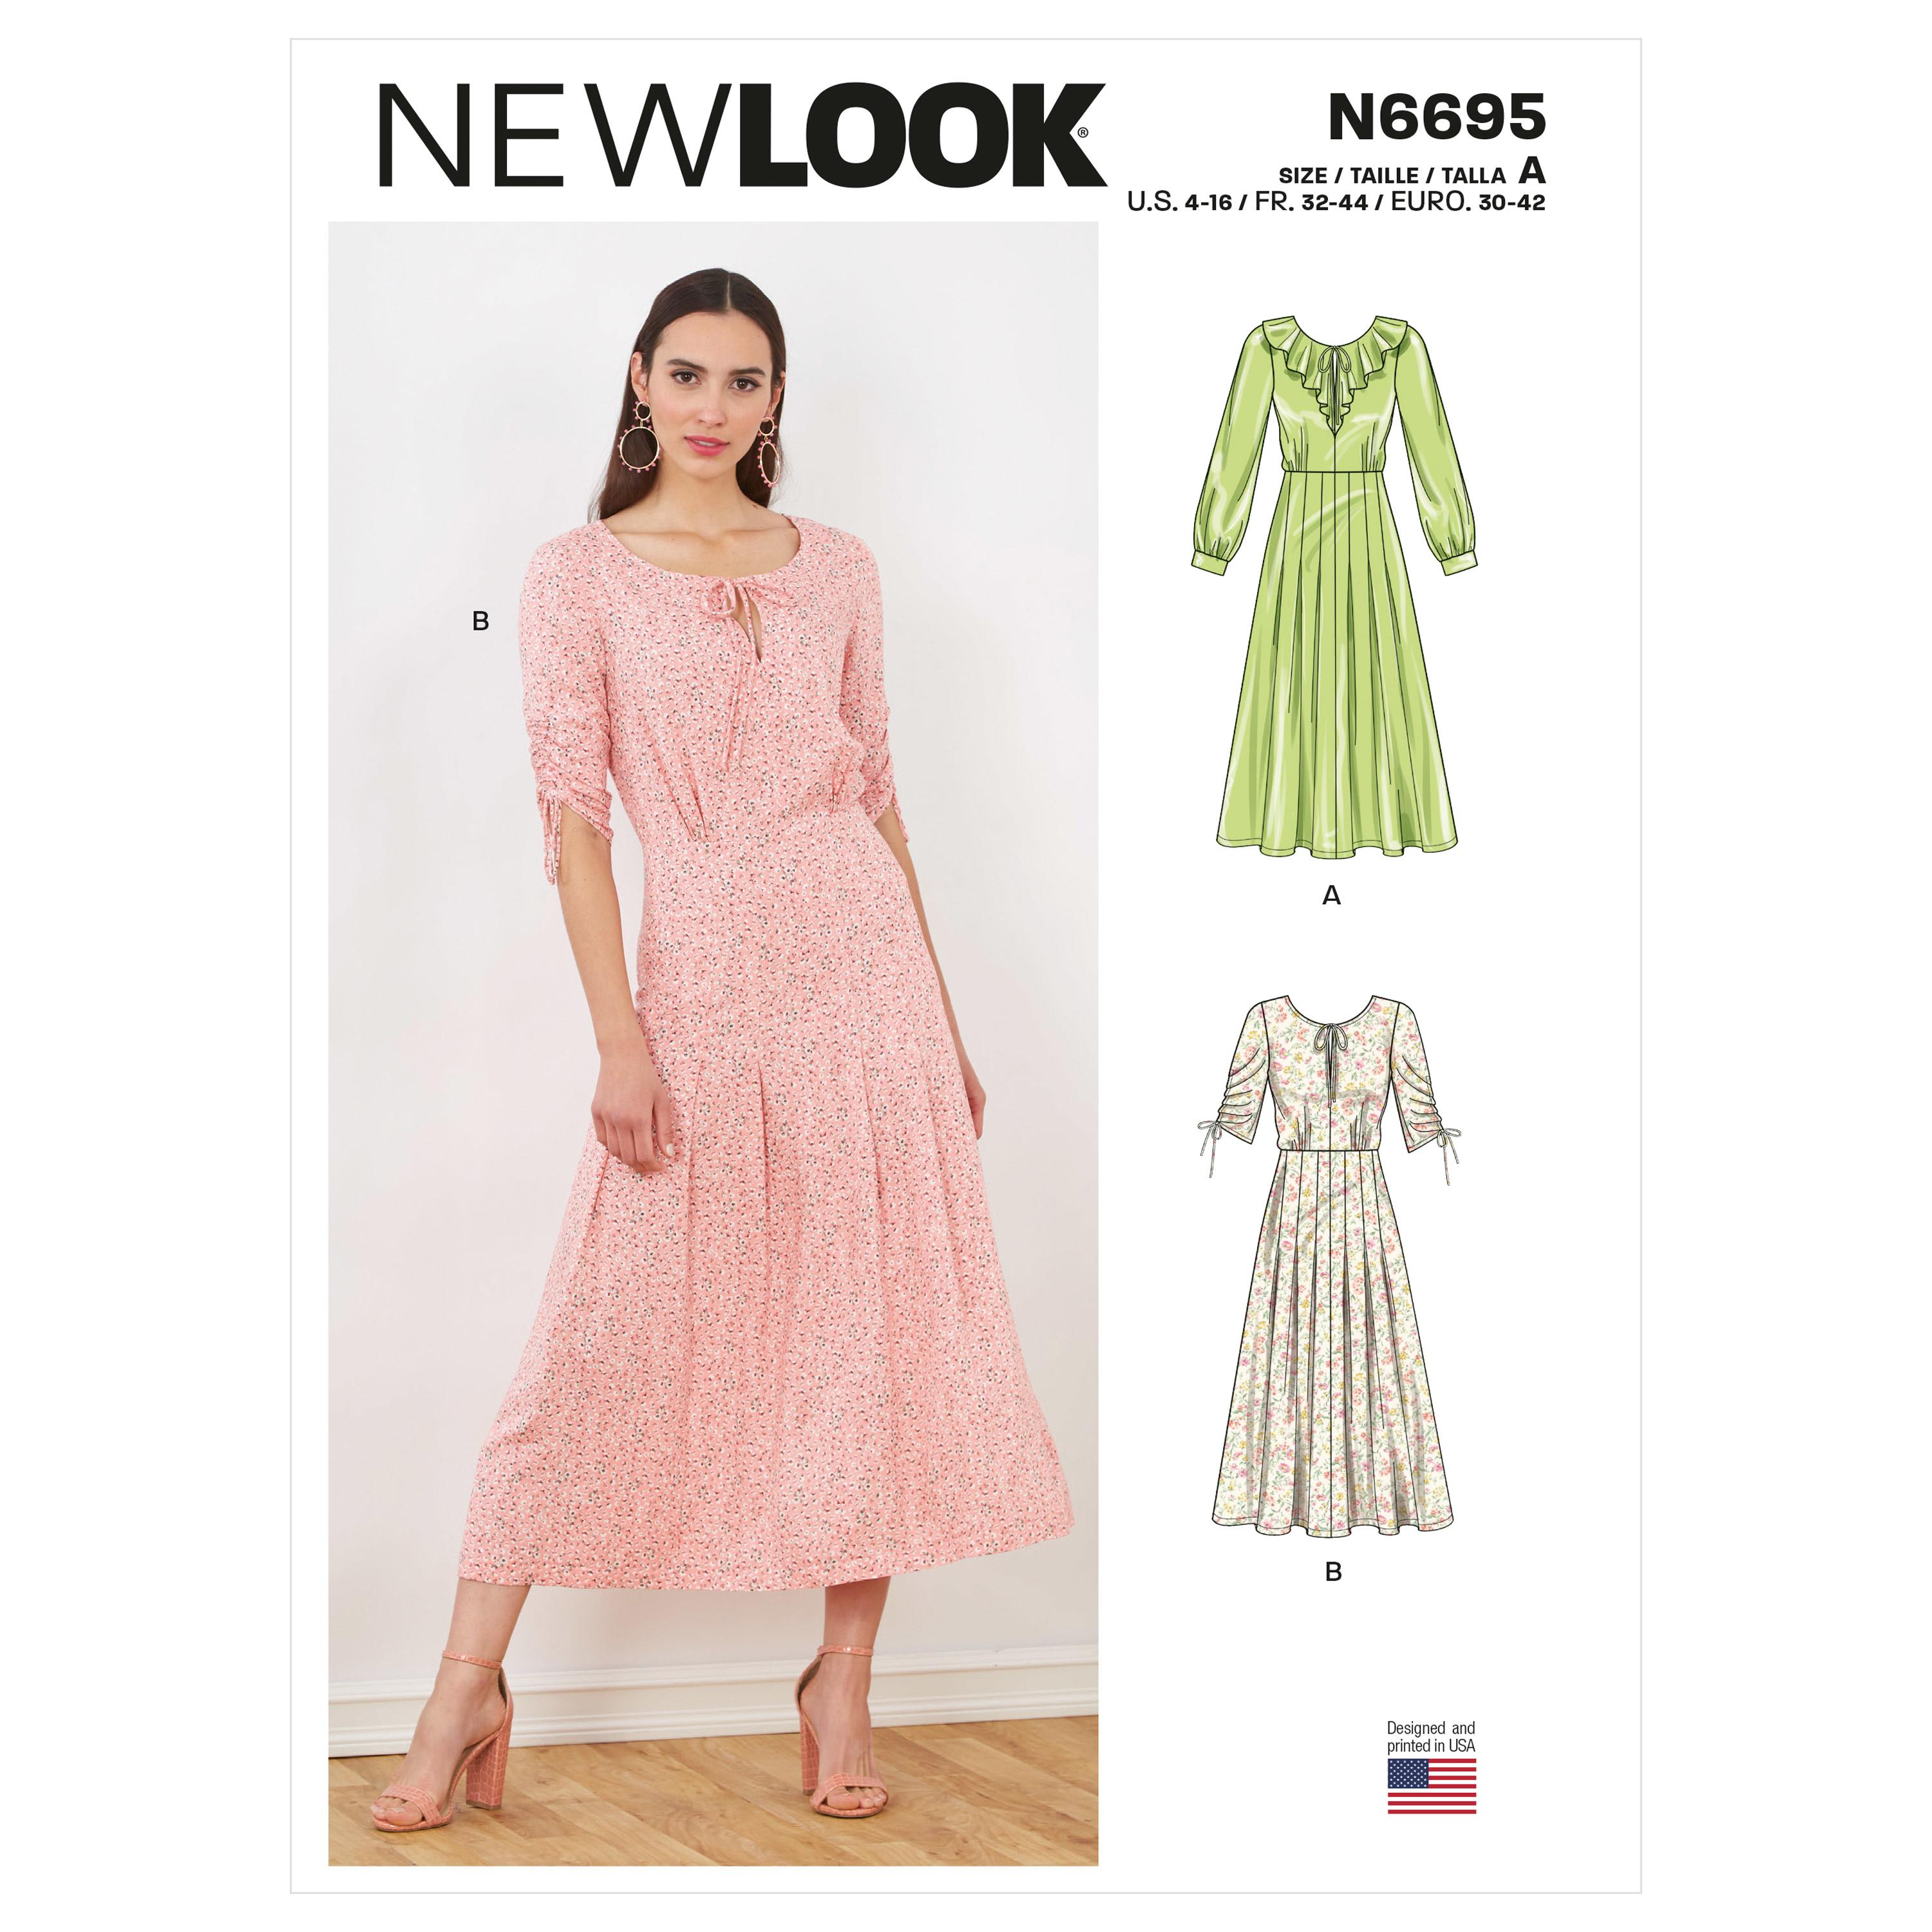 New Look Sewing Pattern N6695 Misses' Dresses